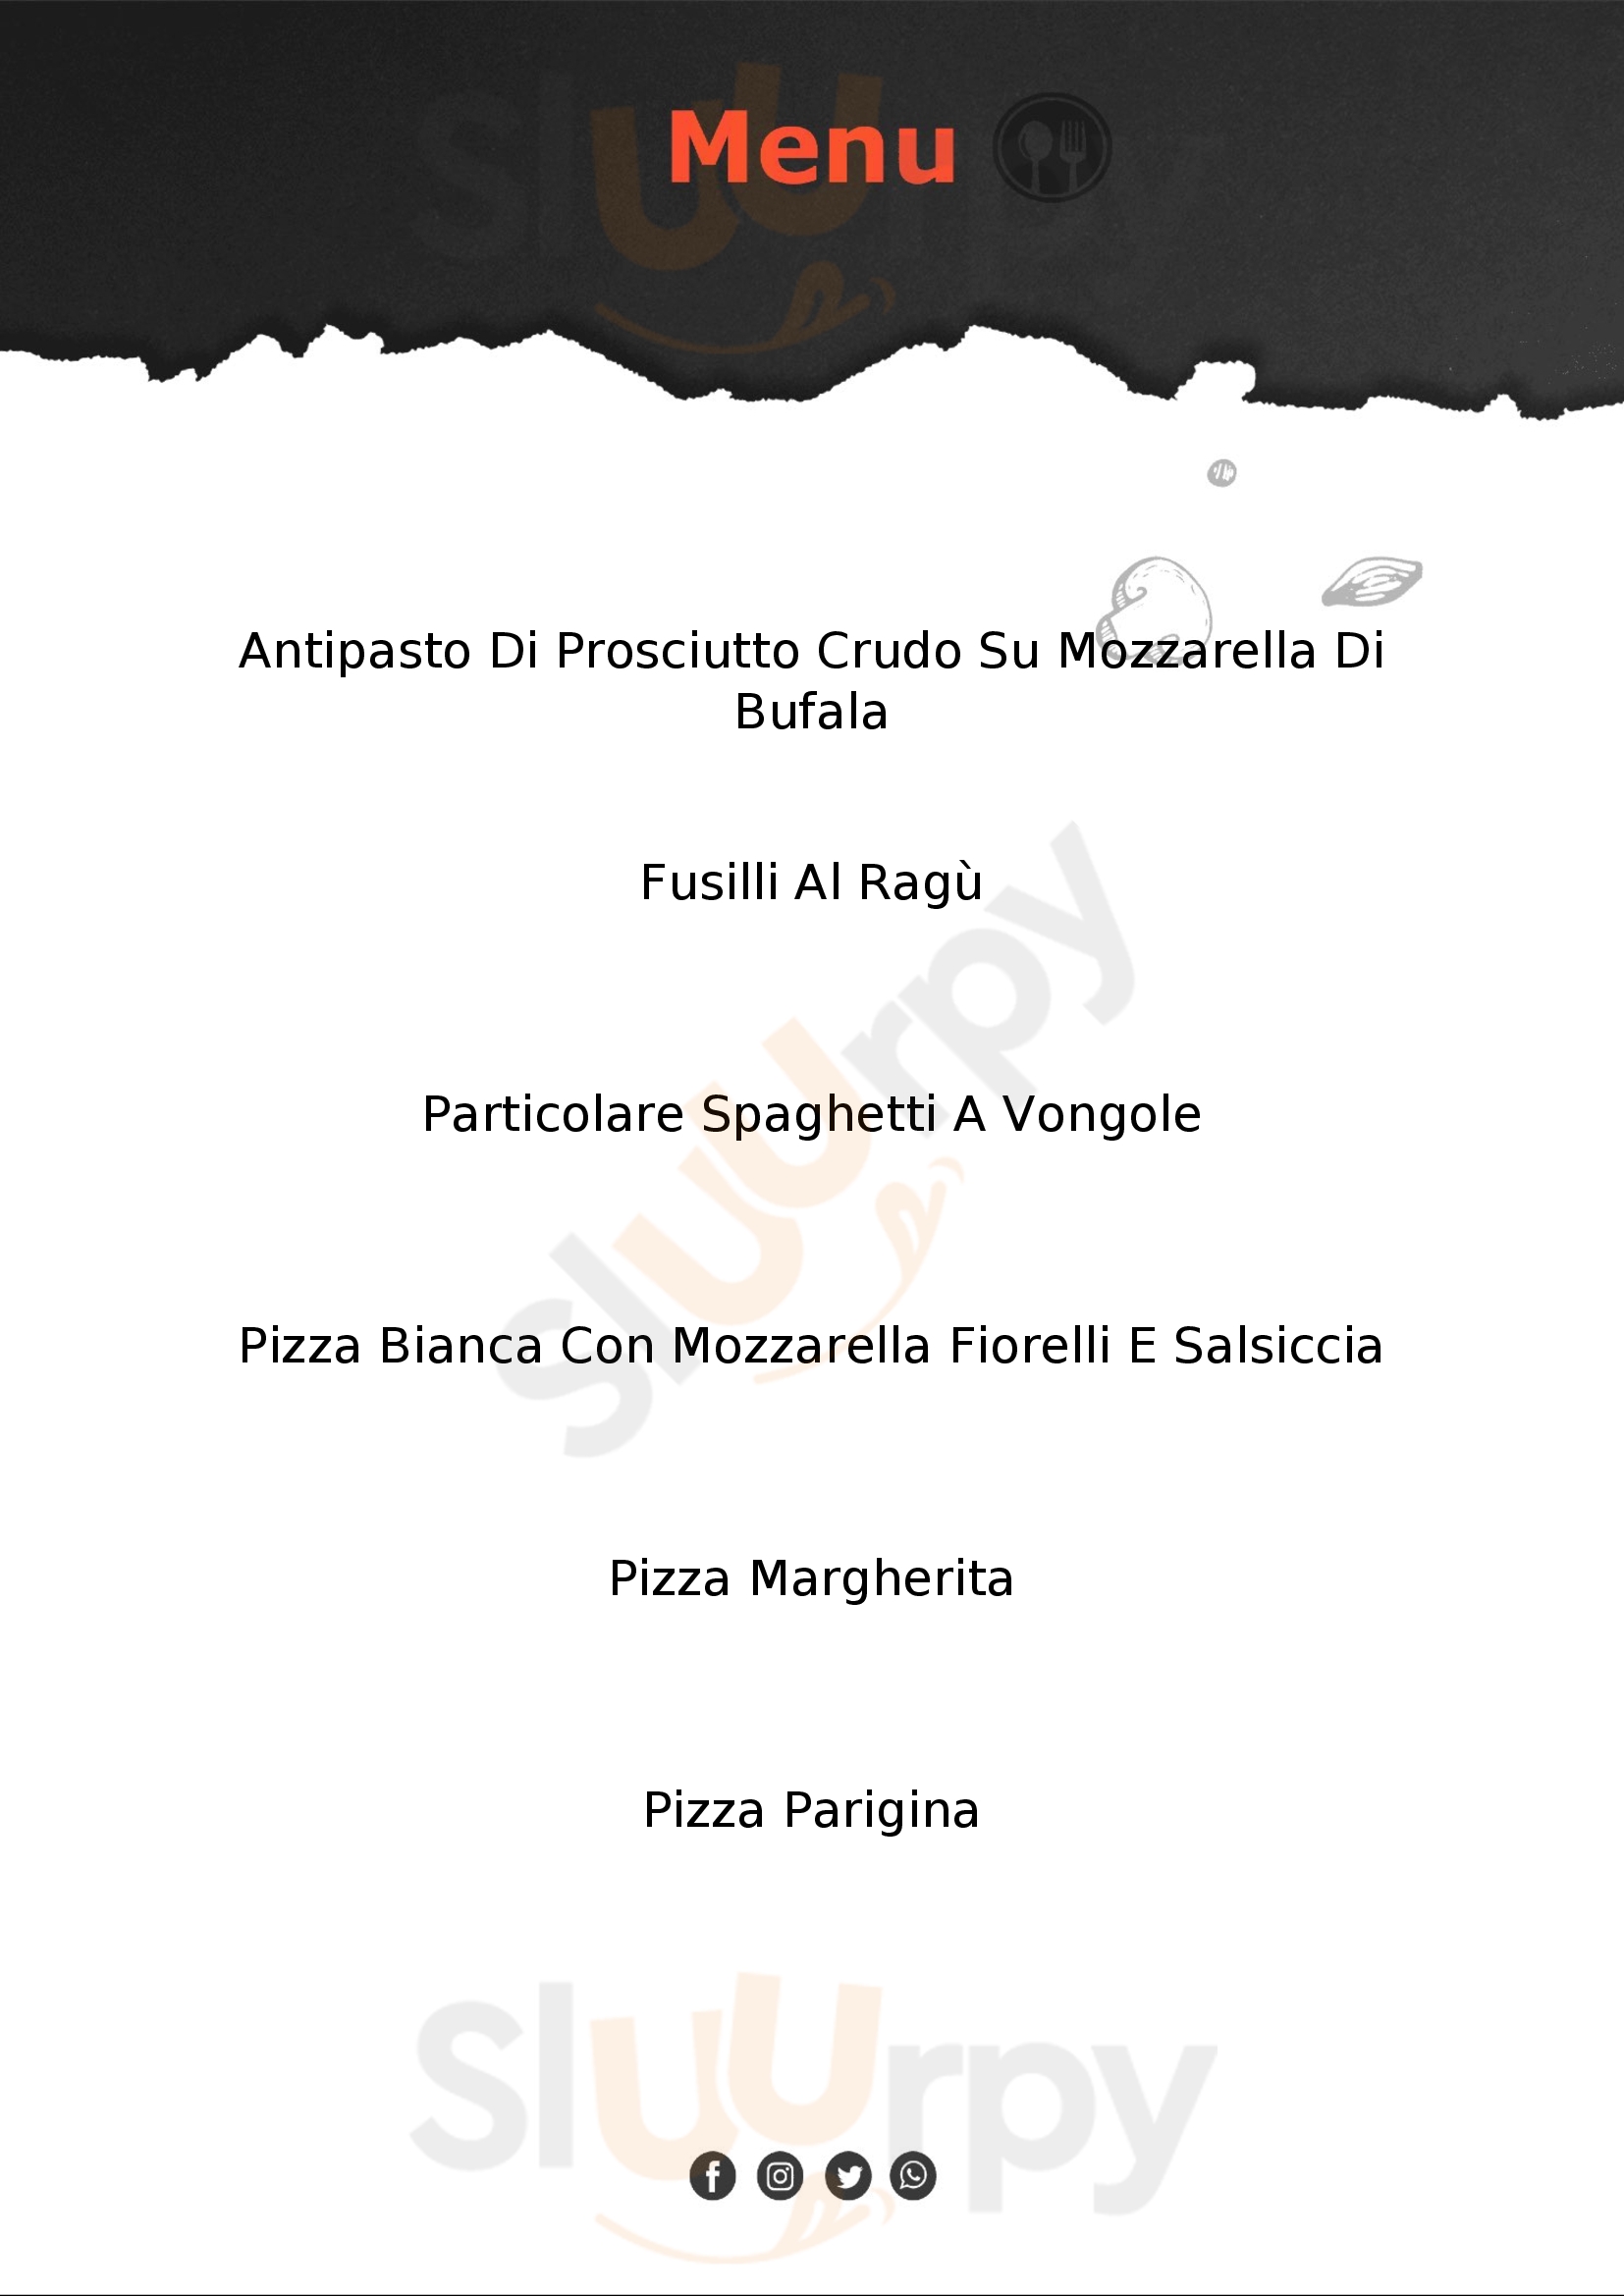 Ristorante Pizzeria Del Corso Cannalonga menù 1 pagina